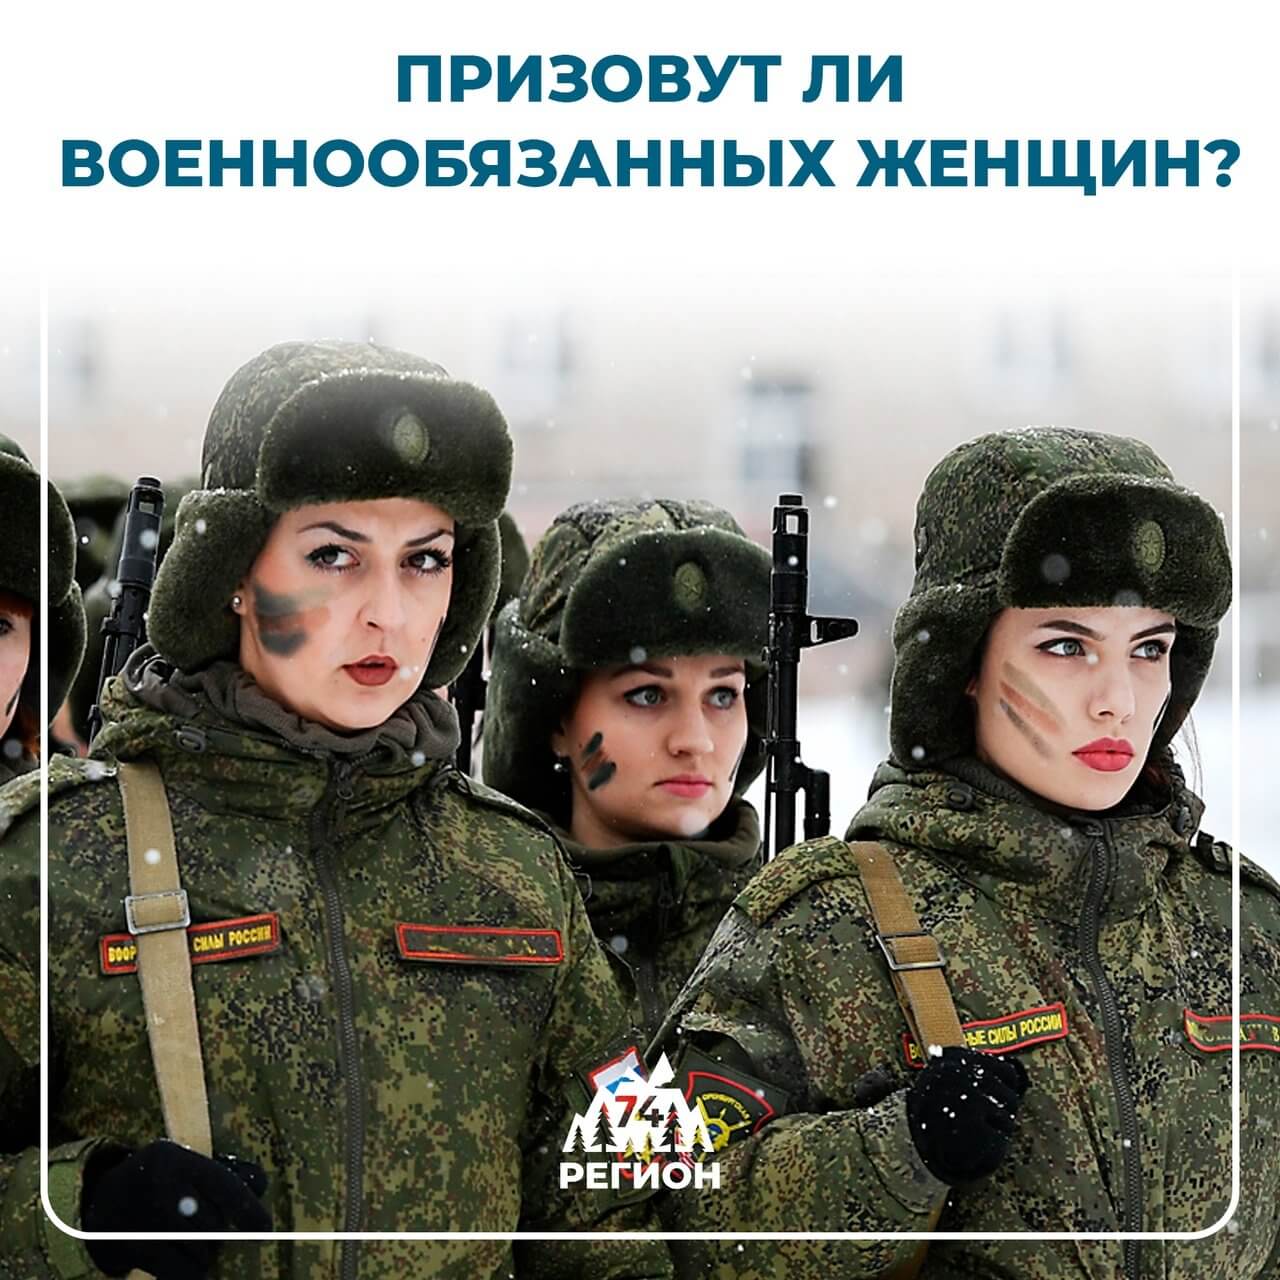 Будут ли призывать военнообязанных женщин?